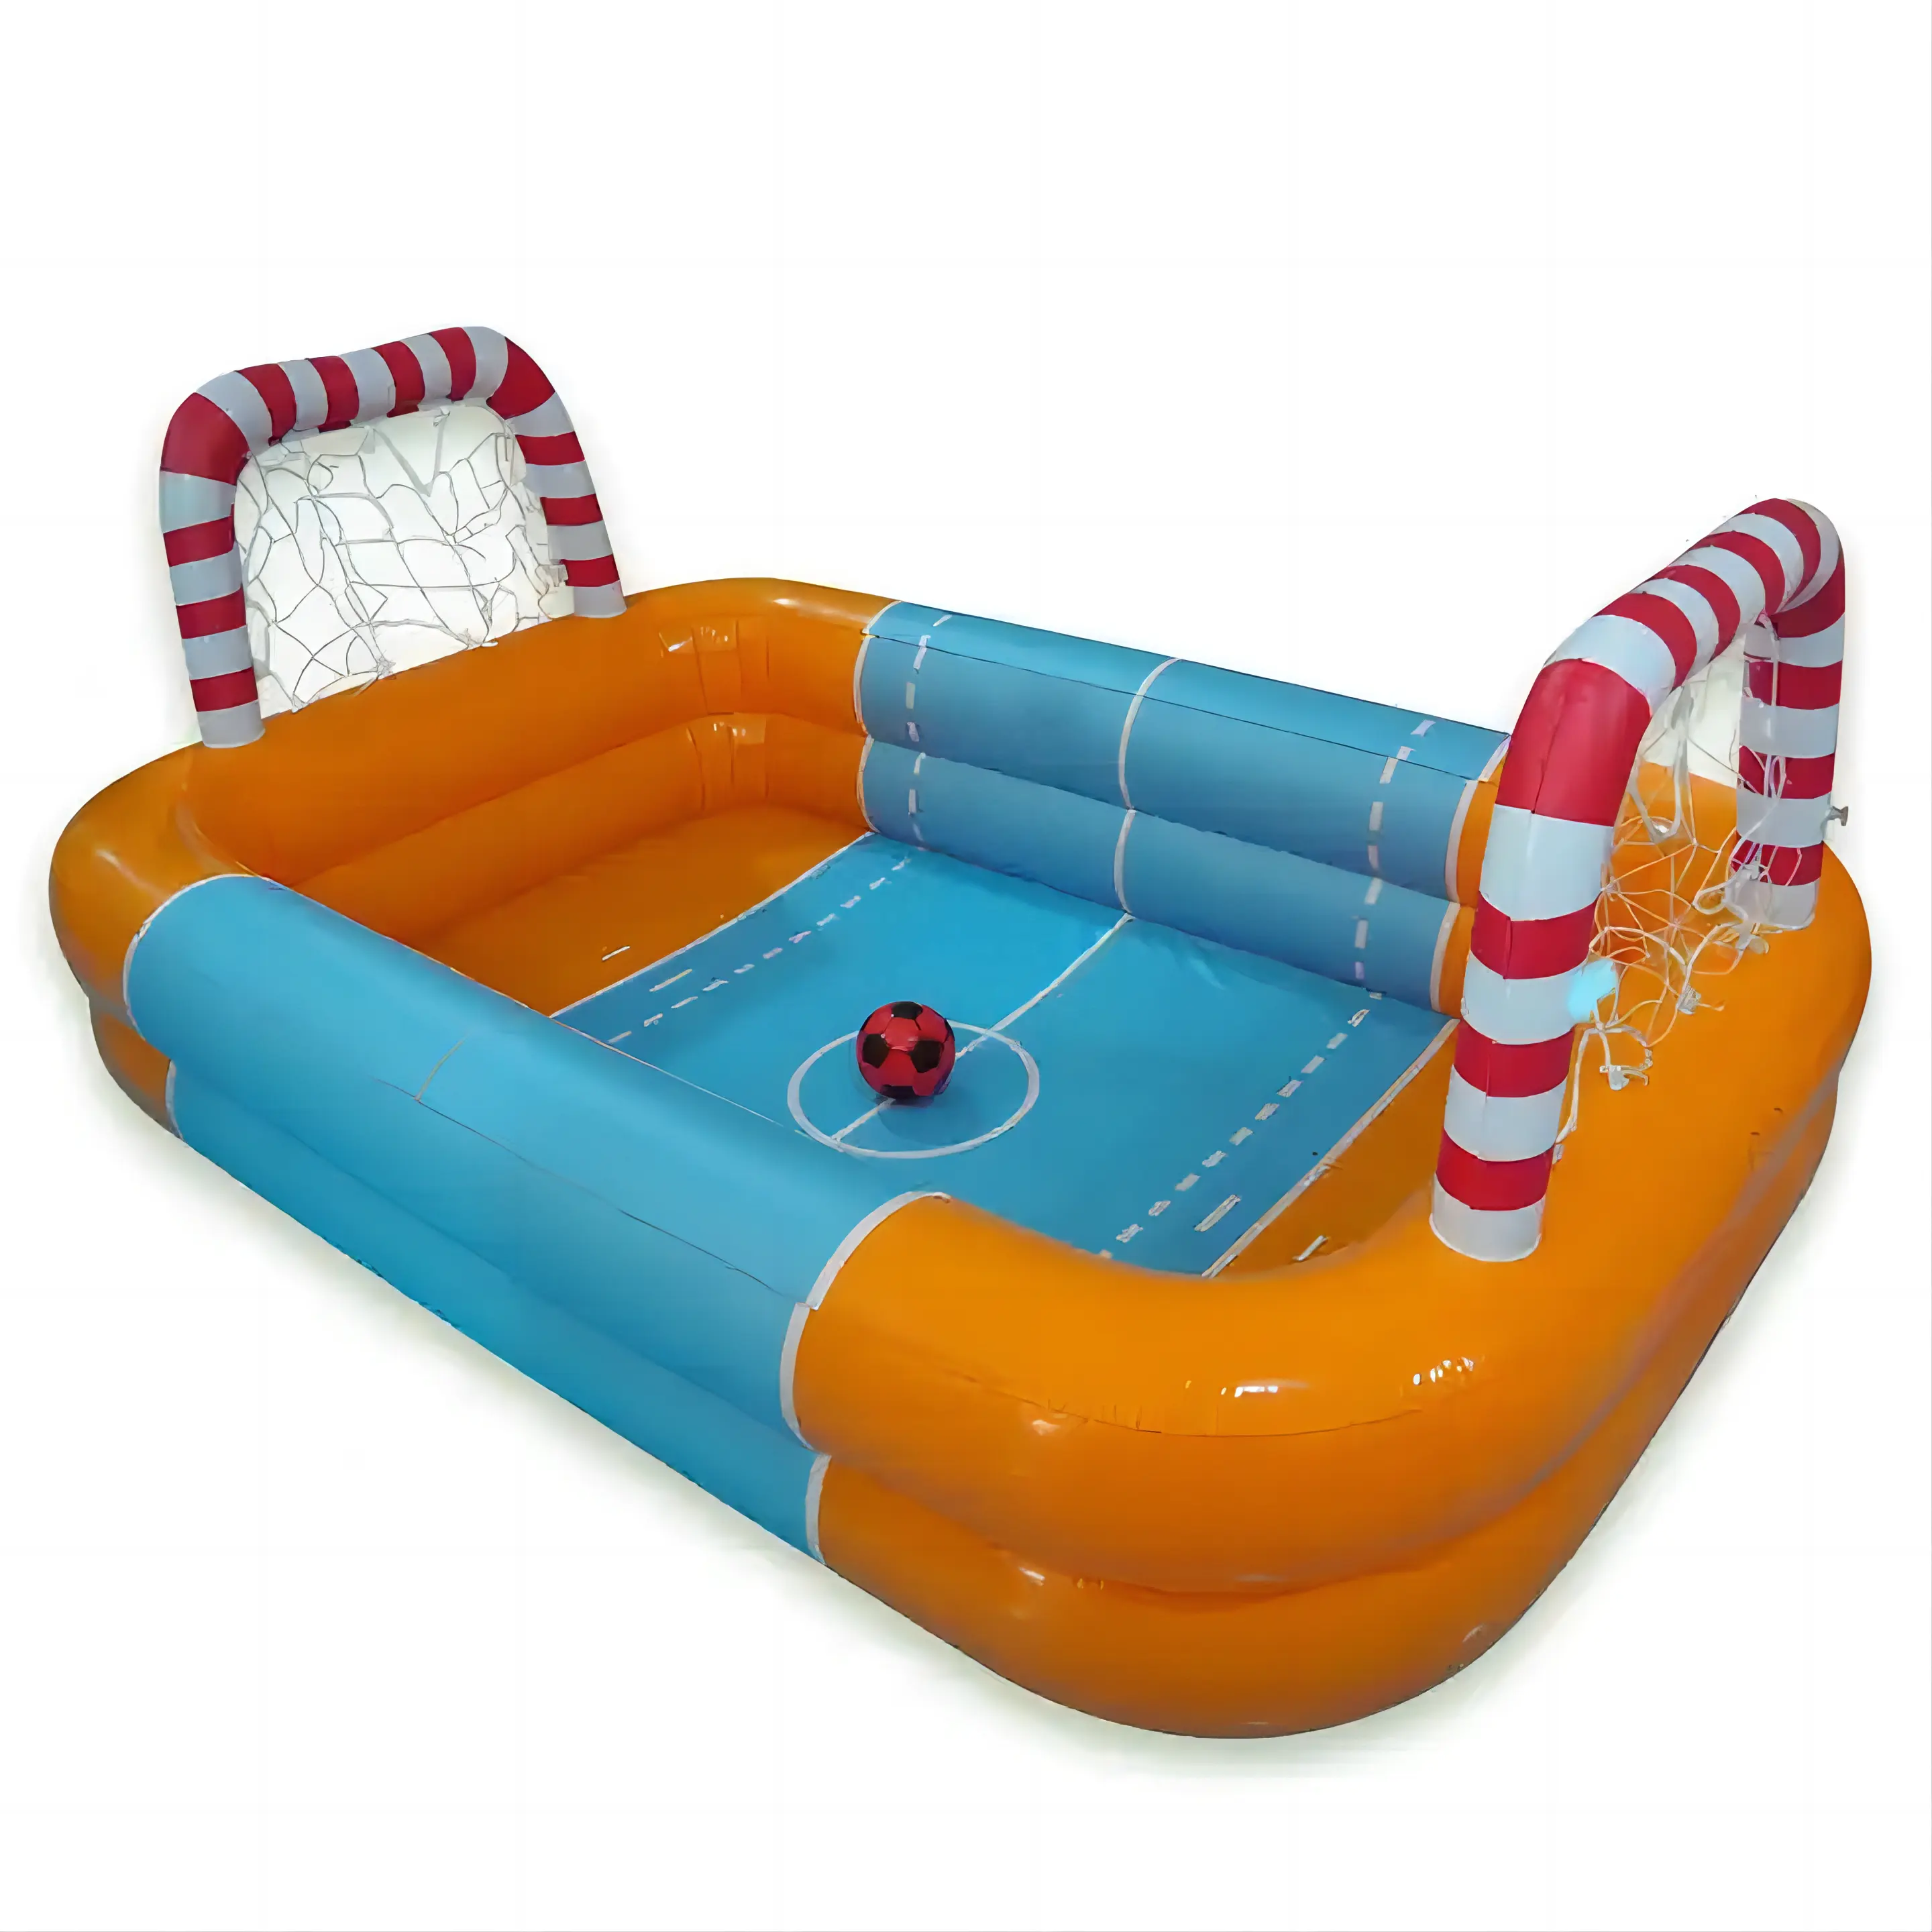 Jogo inflável para piscina de verão, jogo de brinquedo infantil com bola de brincar, novo design, piscina inflável para pais e filhos